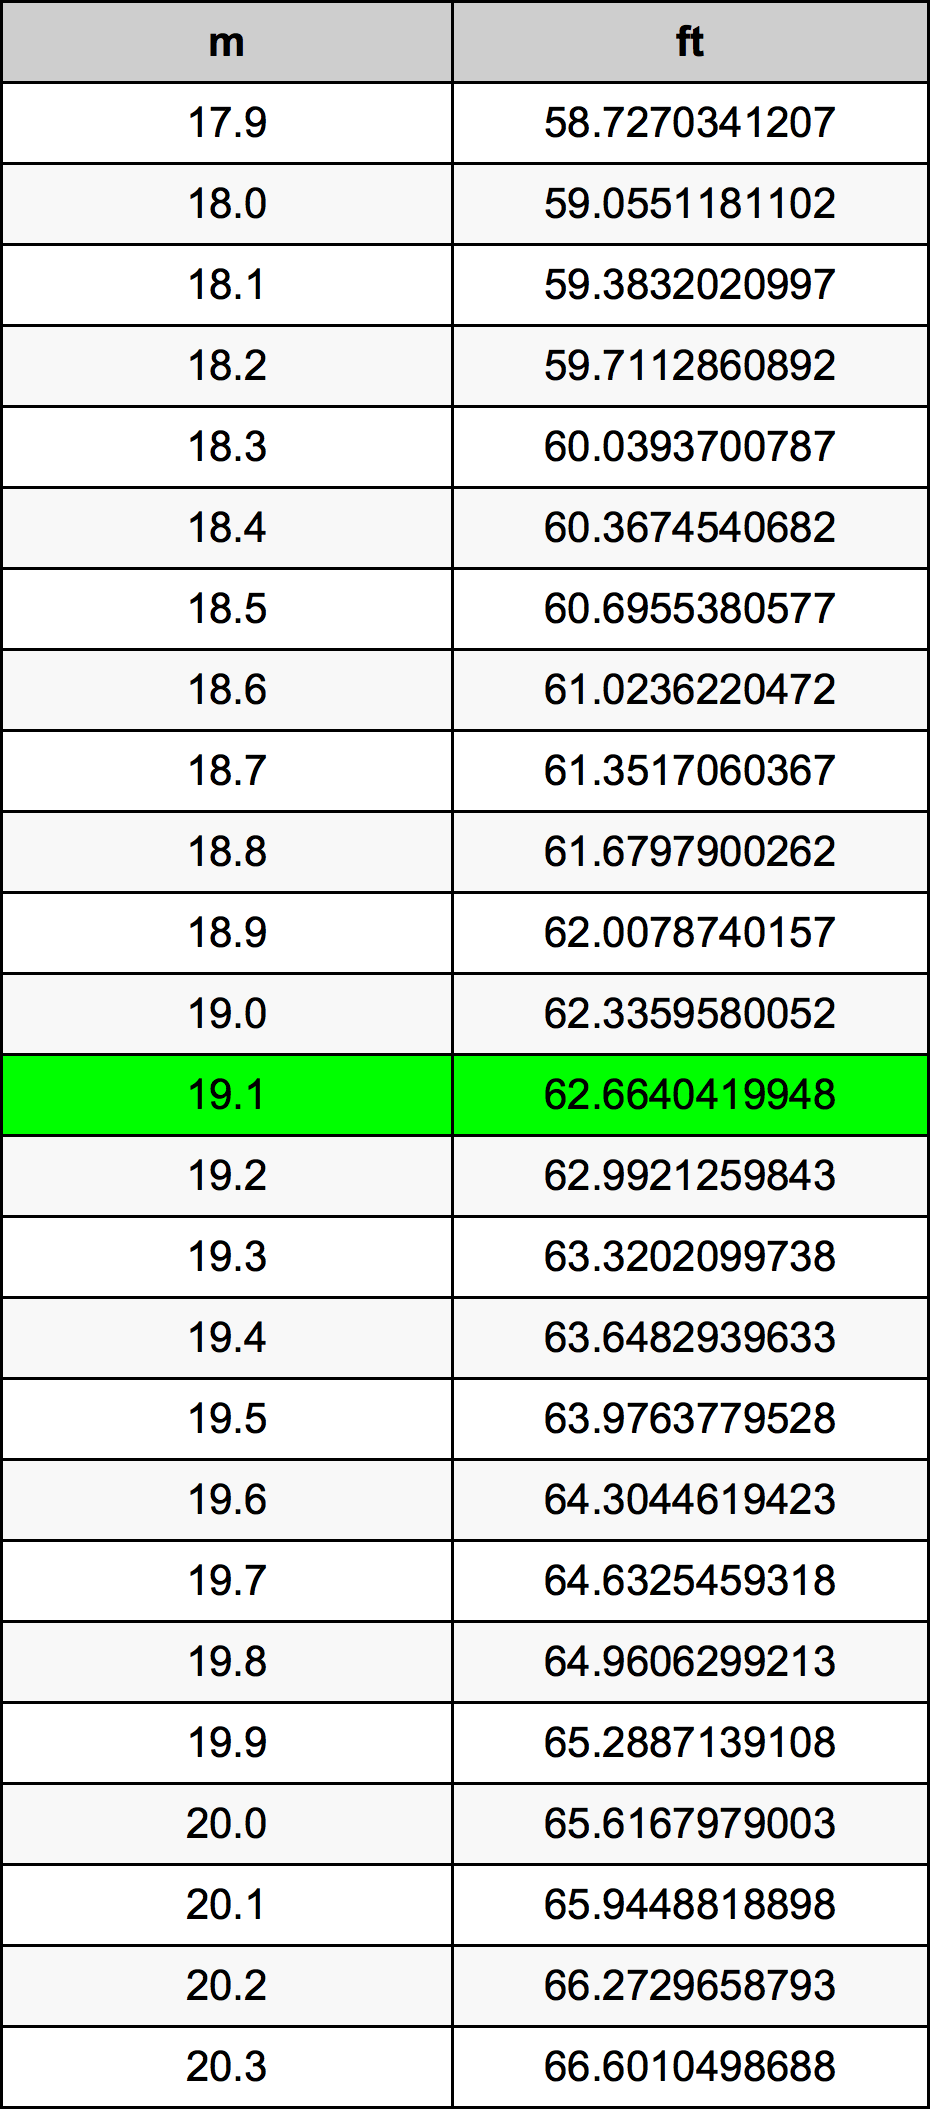 19.1 Metru tabelul de conversie